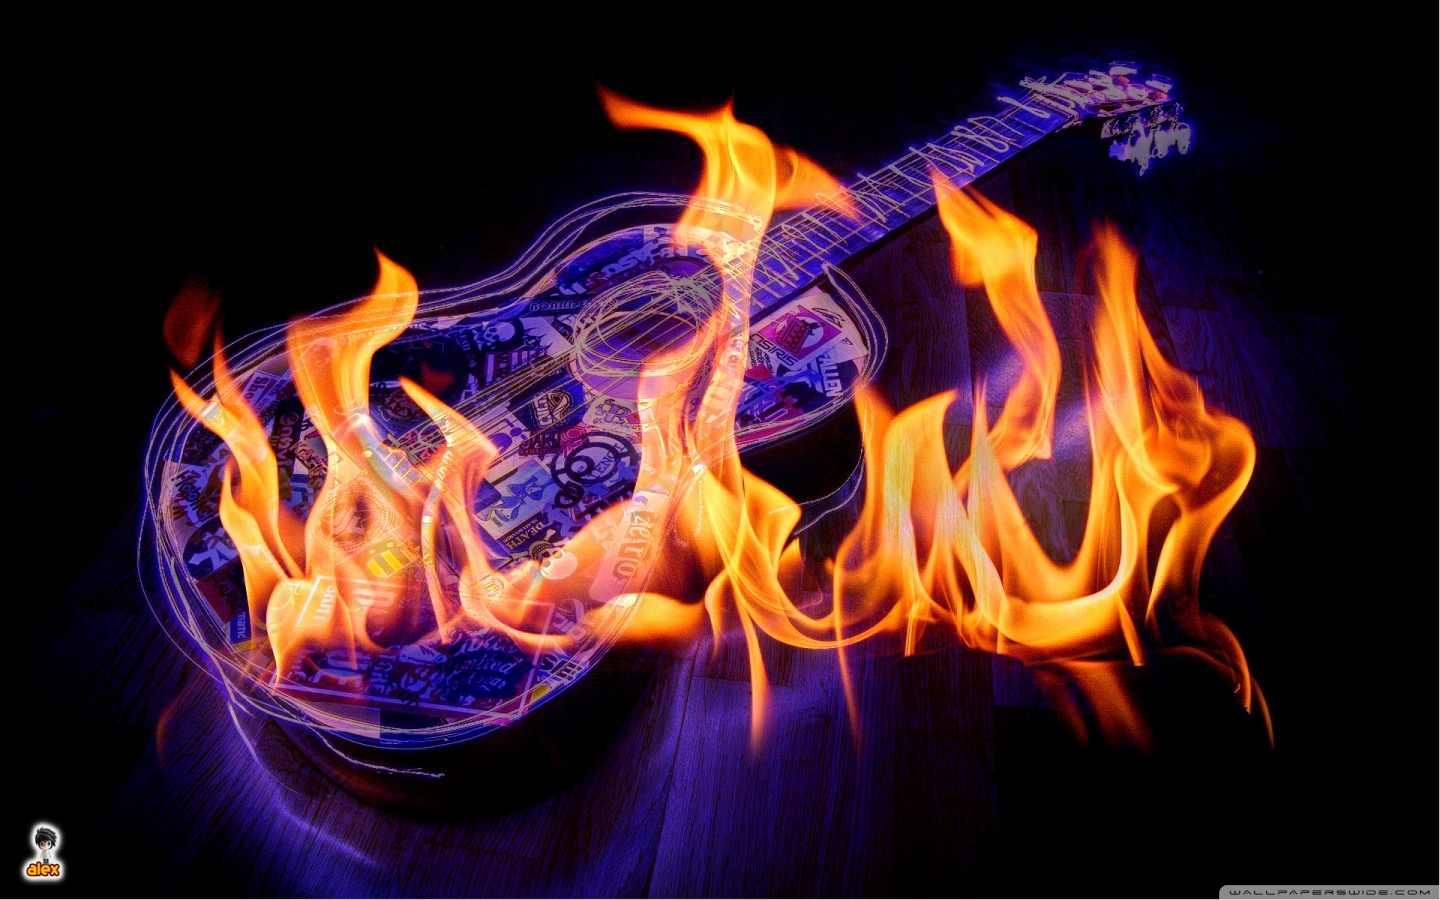 Guitar on fire HD desktop wallpaper Widescreen